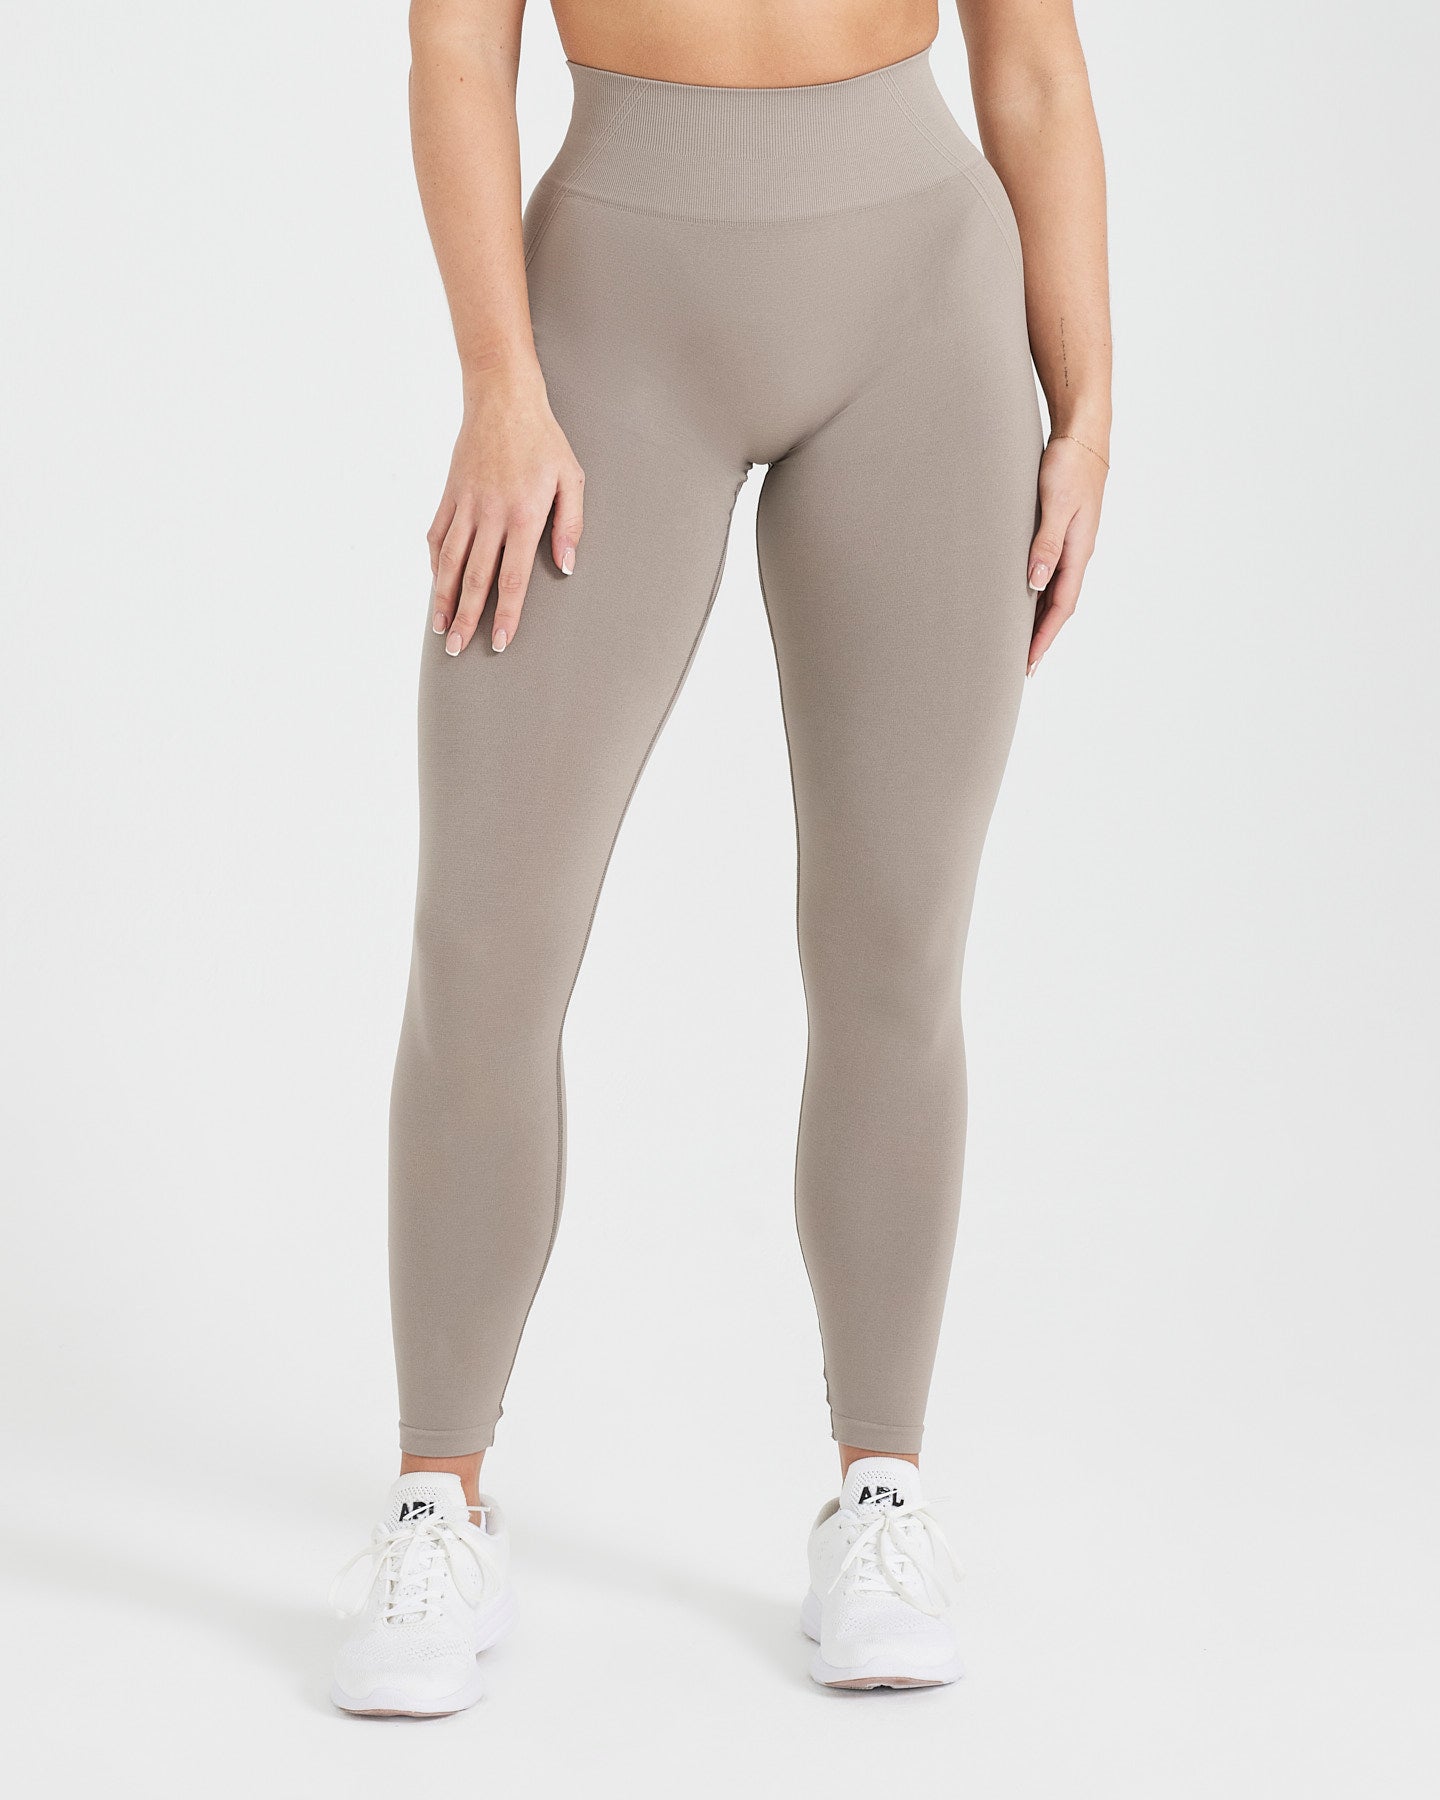 Women Gym Anti Cellulite Yoga Pants Butt Lift Tik Tok Leggings Sport  Trousers | eBay